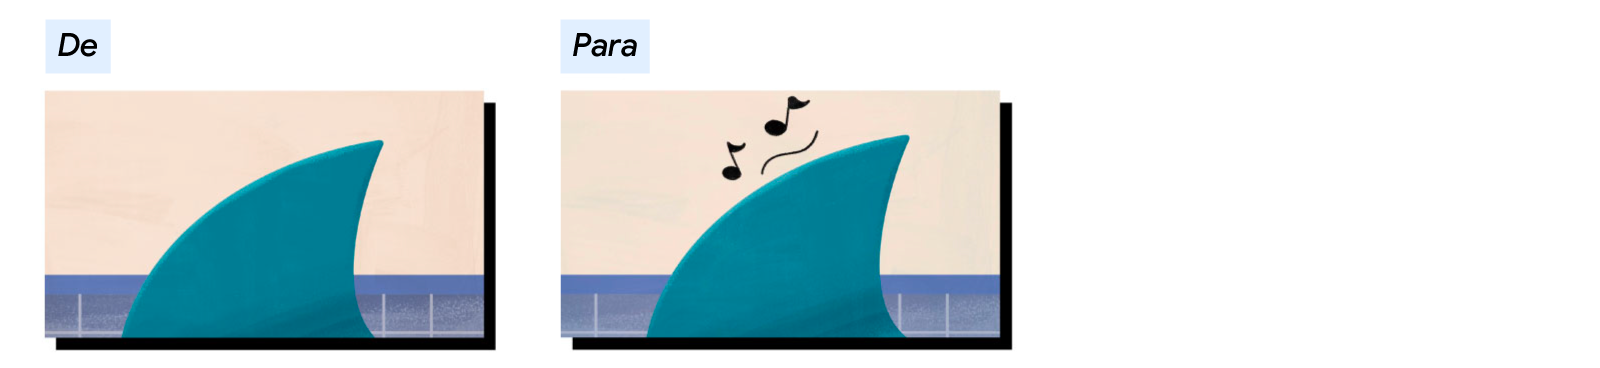 A barbatana de tubarão em close deve ser substituída pela mesma barbatana, porém com a inclusão de música.